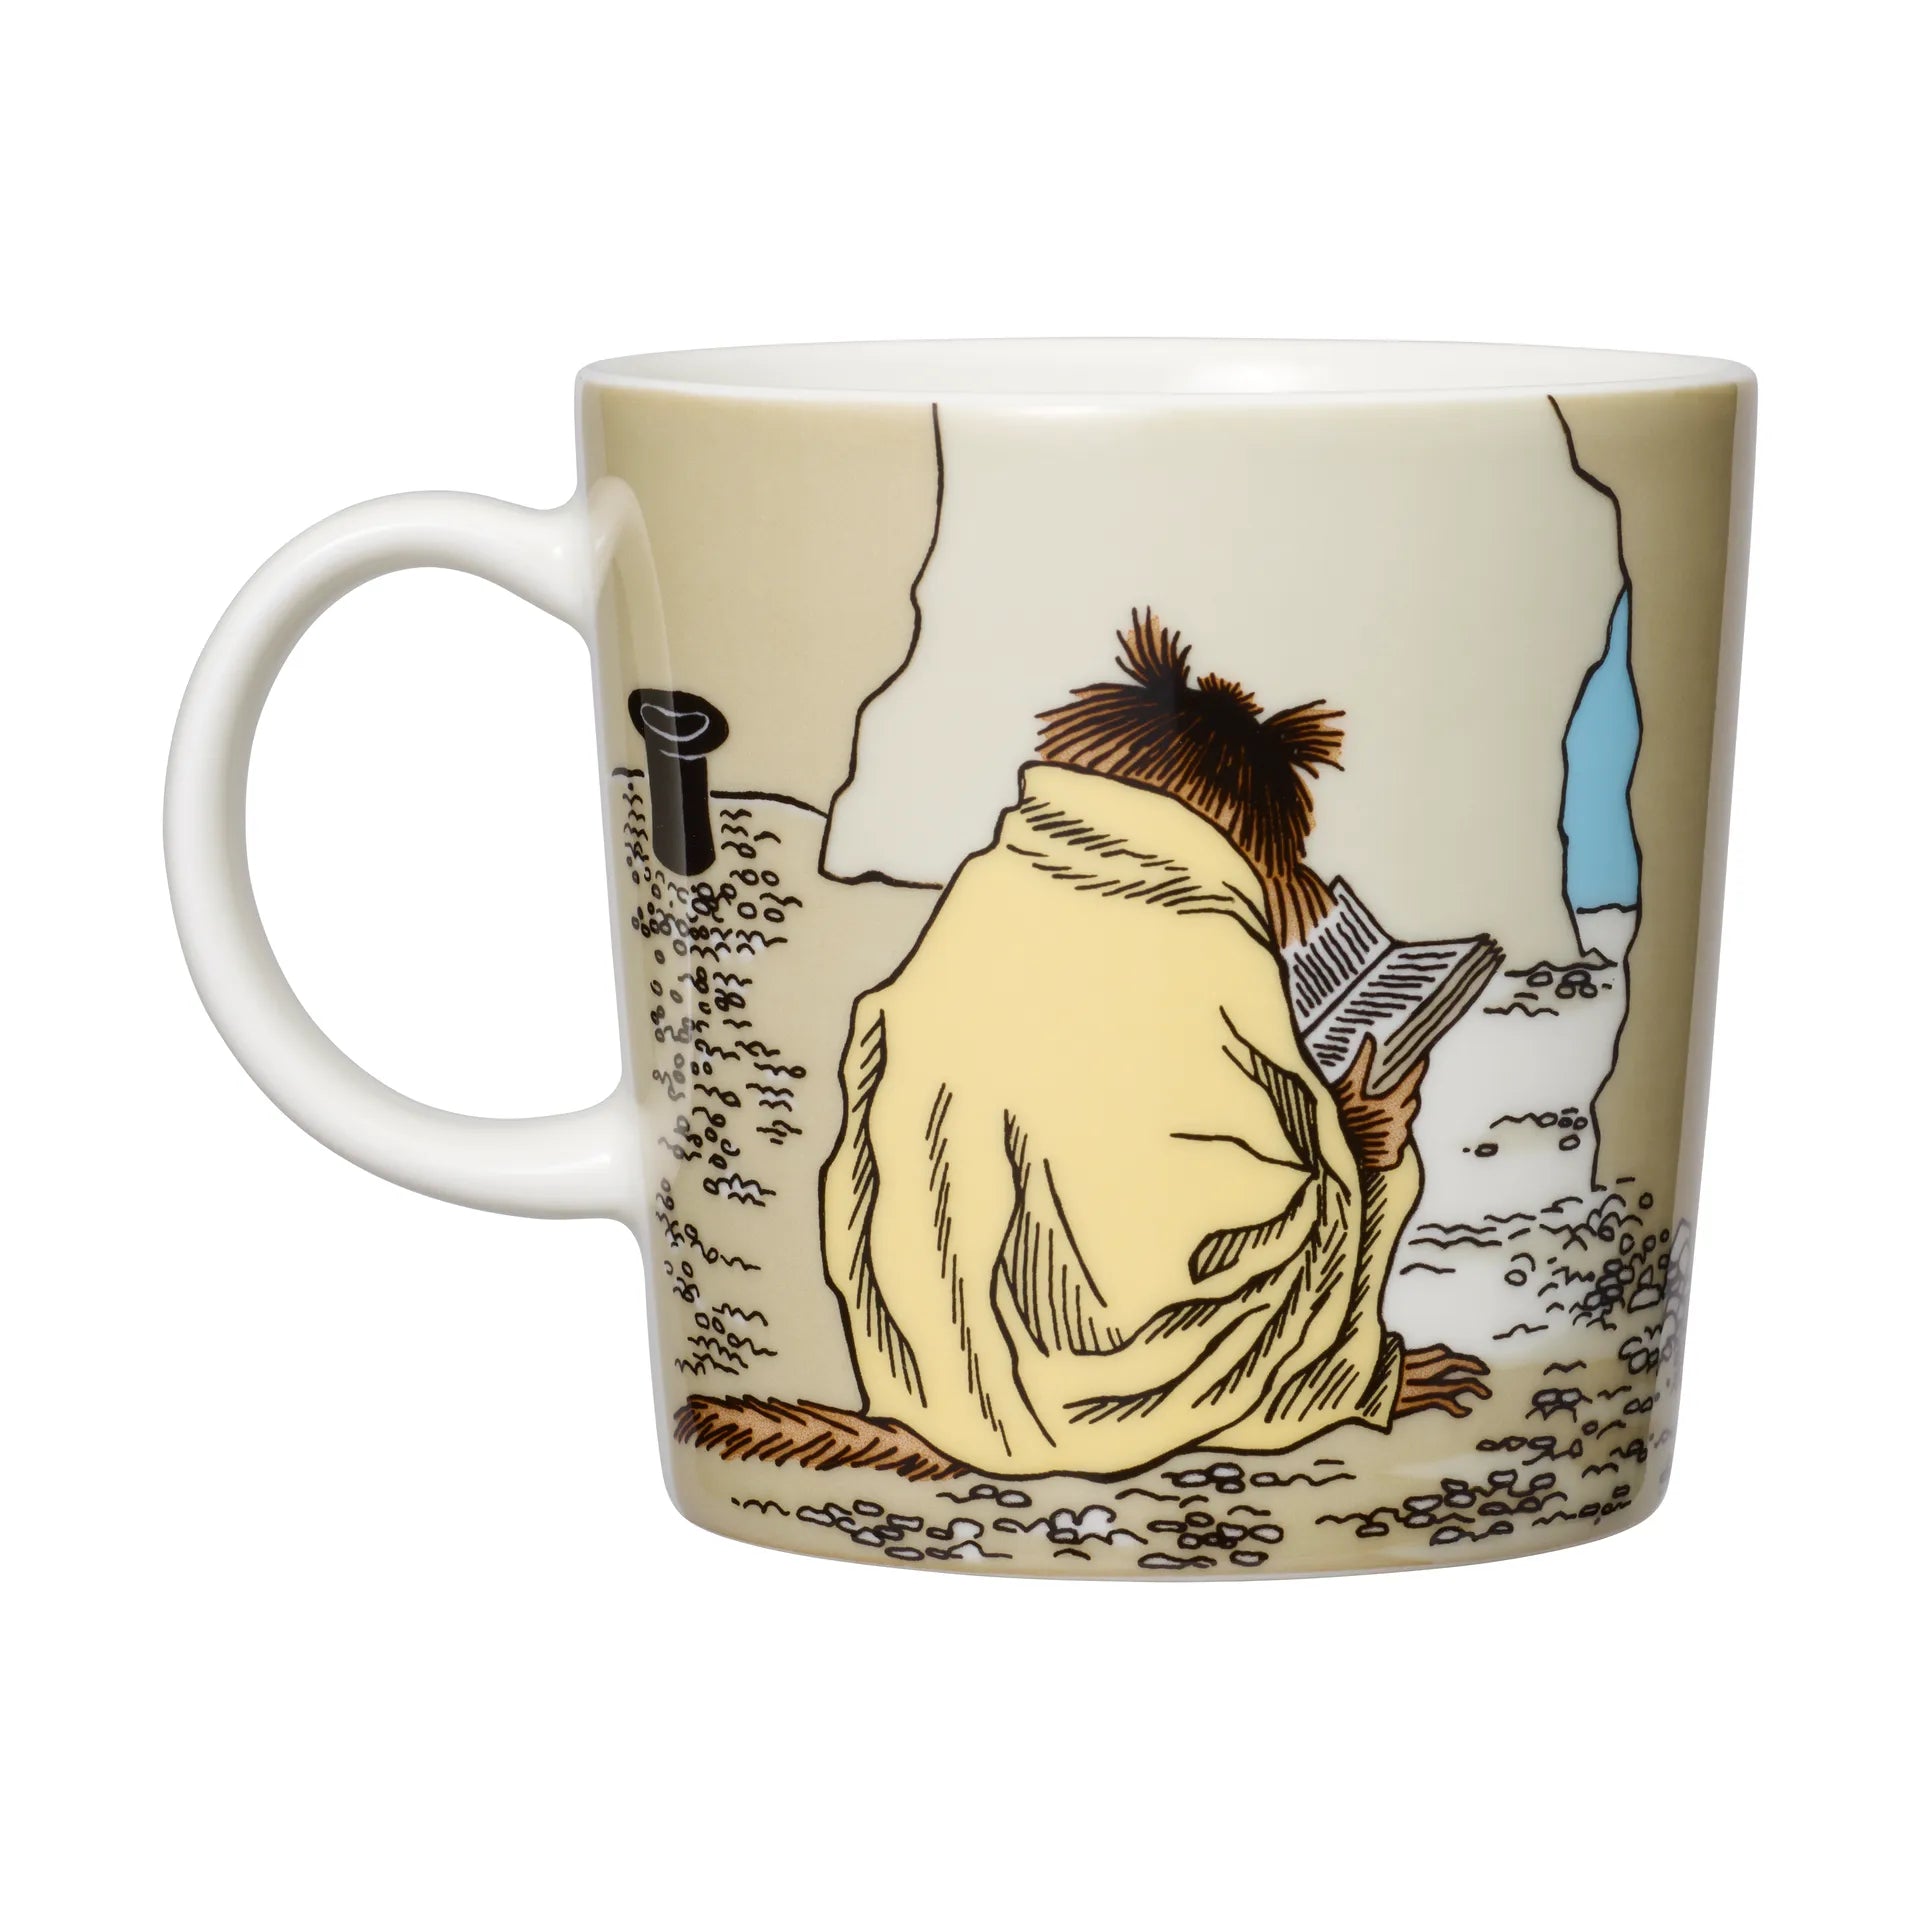 Moomin Arabia / iittala mug 300ml  / 10oz  Muskrat